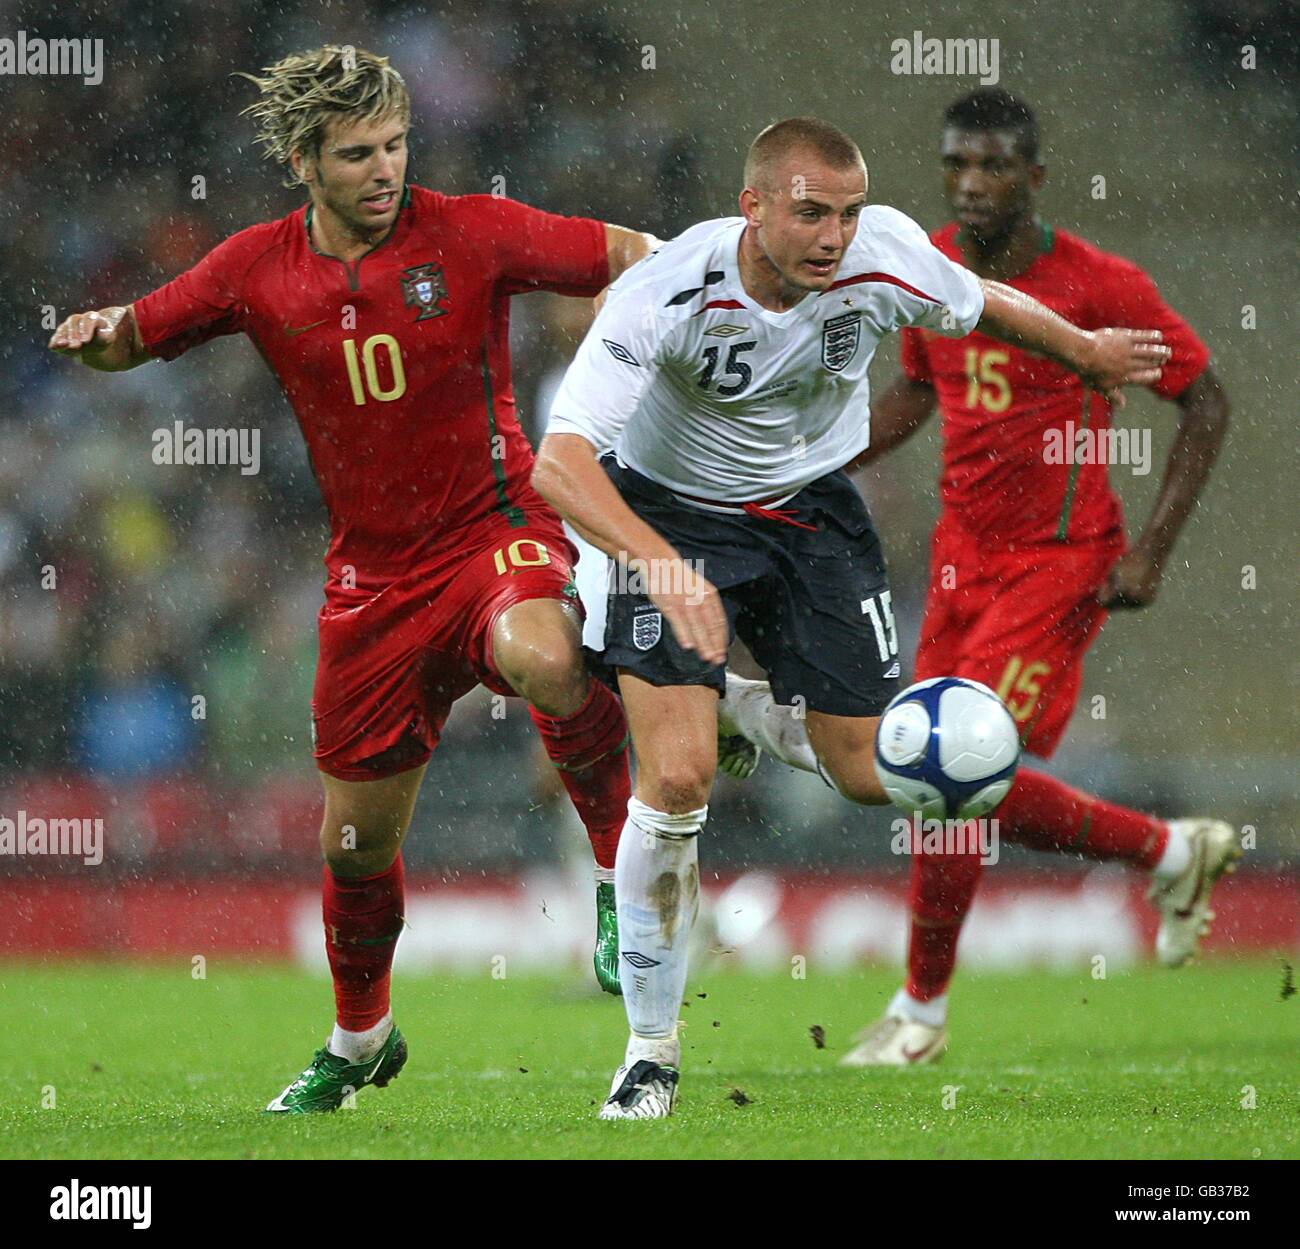 Soccer - UEFA European Under 21 Championship 2009 Qualifying - Group 3 - England v Portugal - Wembley Stadium Stock Photo